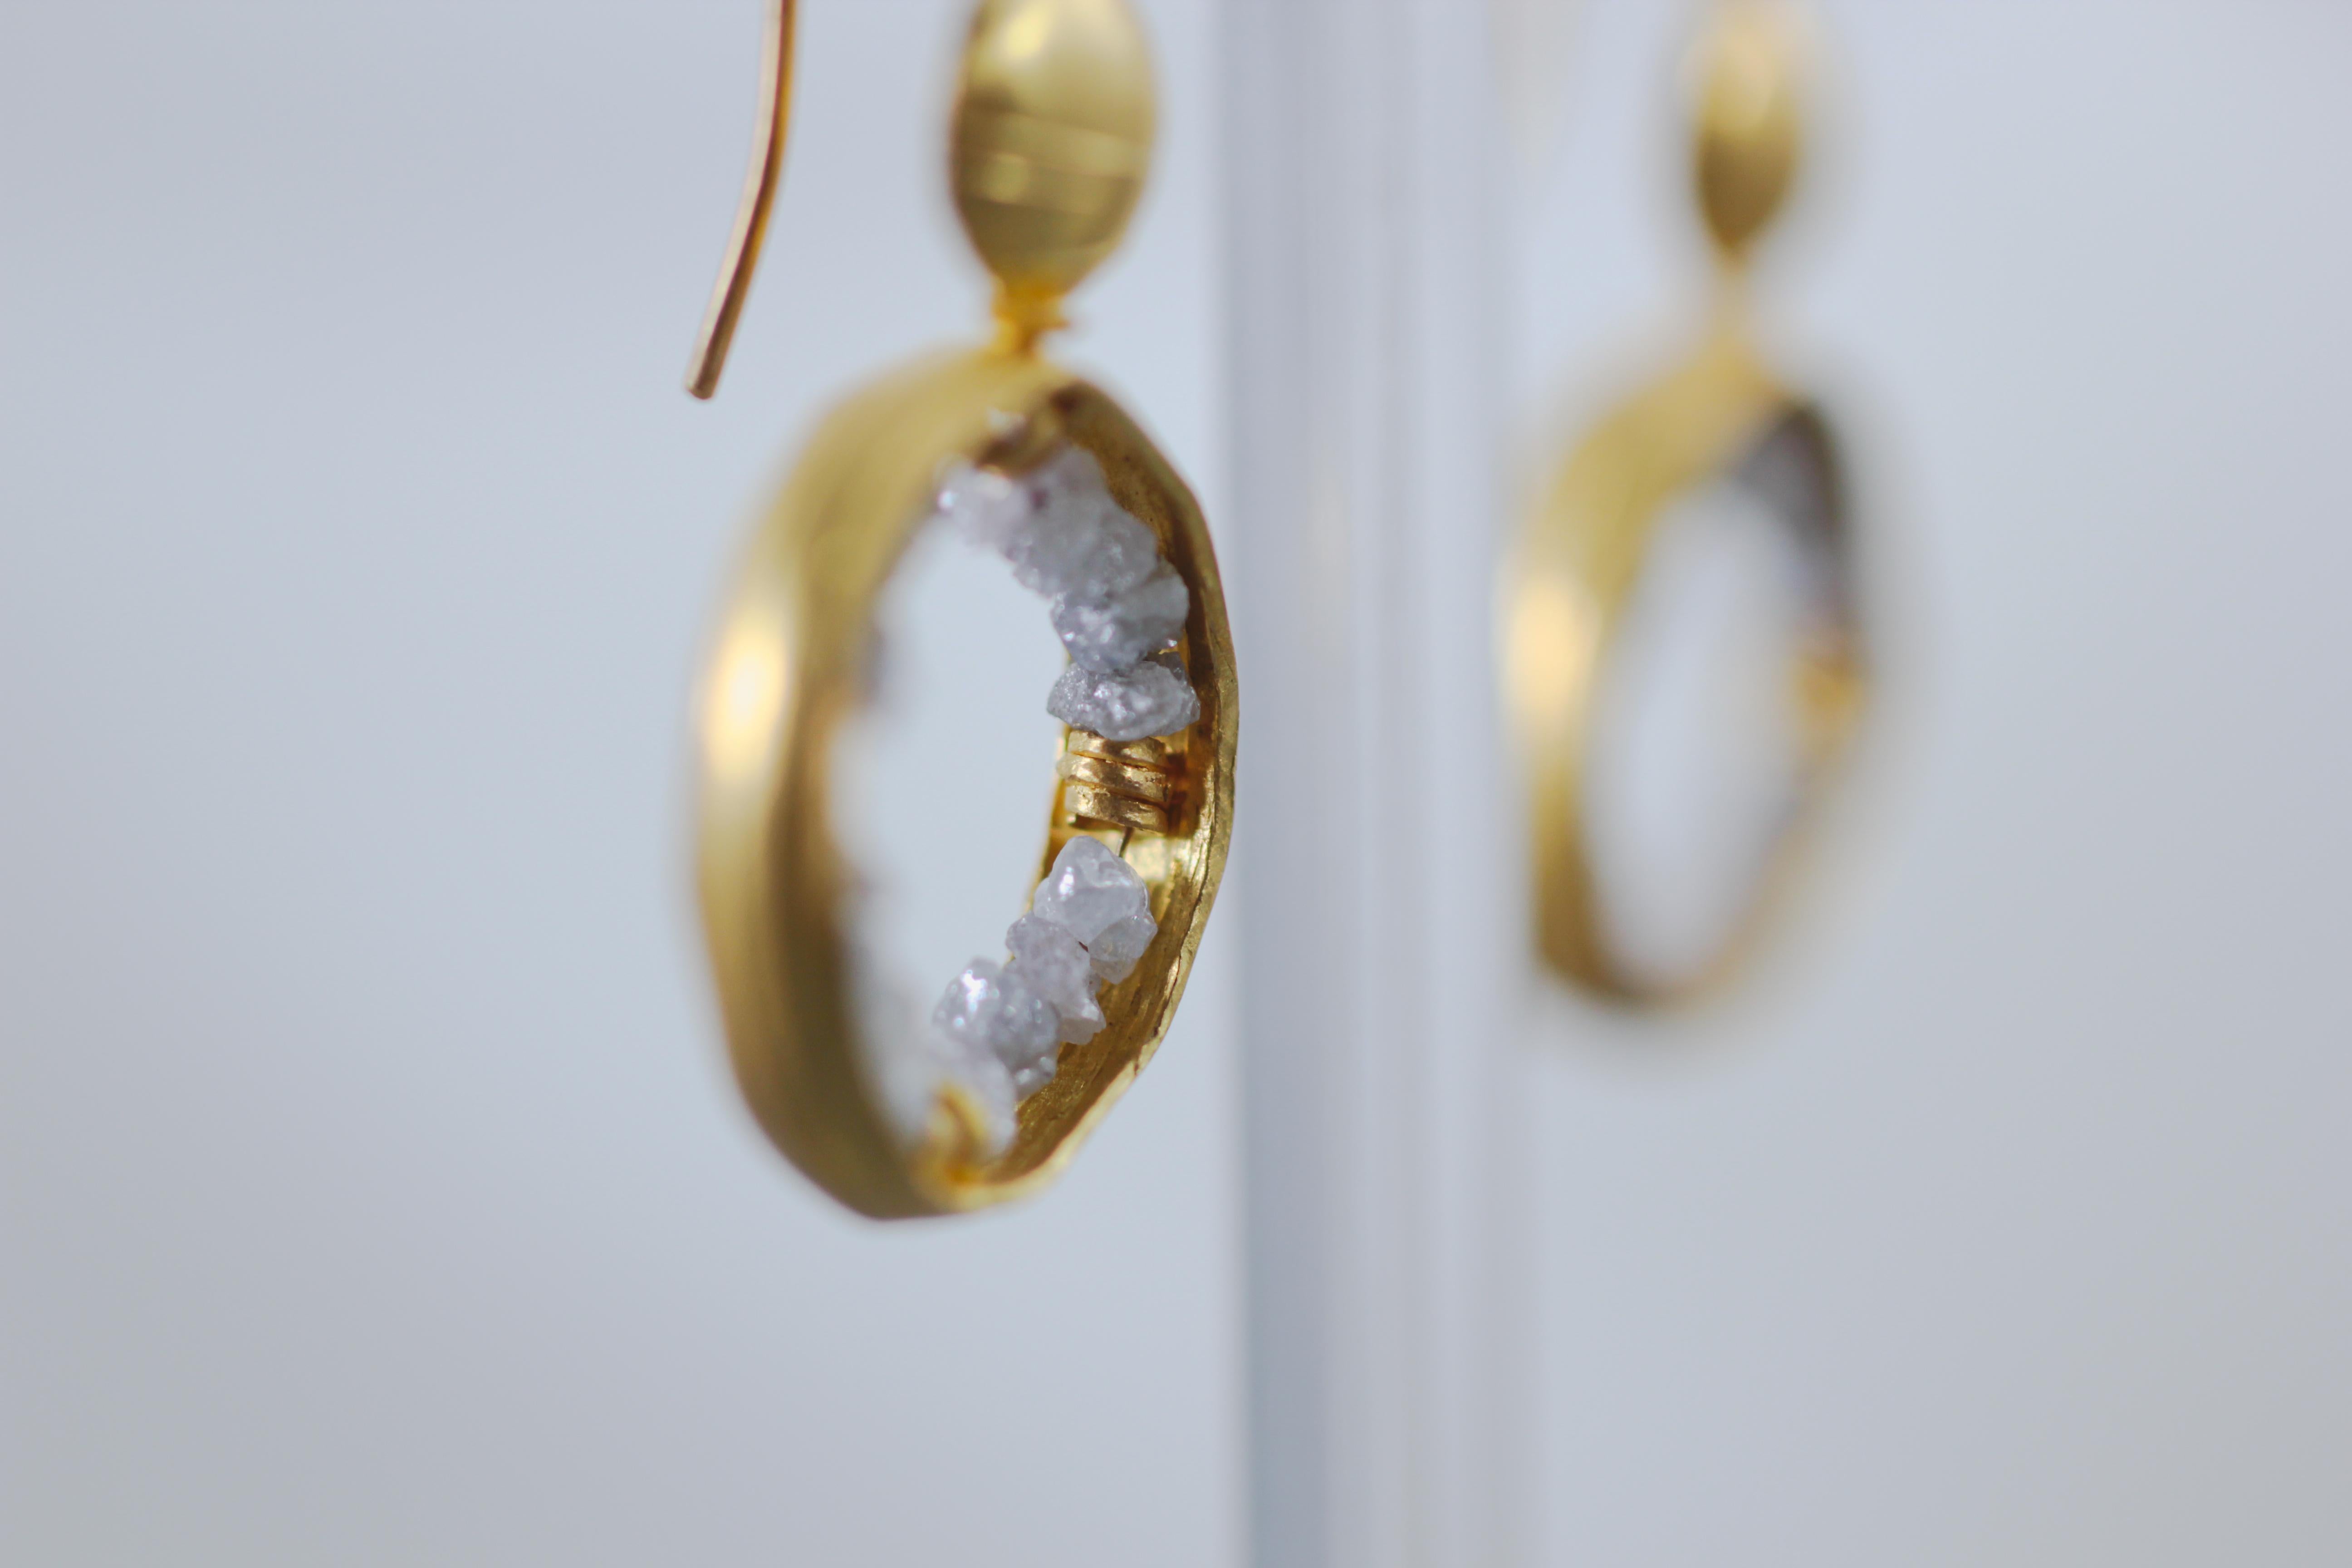 Ohne Titel II Ohrringe. Lustige, diamantene Ohrringe aus 21 Karat massivem Gold mit grauen Rohdiamanten. Ideal als Braut-, Verlobungs- oder Weihnachtsgeschenk.  Eine moderne Variante der klassischen Kombination aus Gold und Diamanten. Die